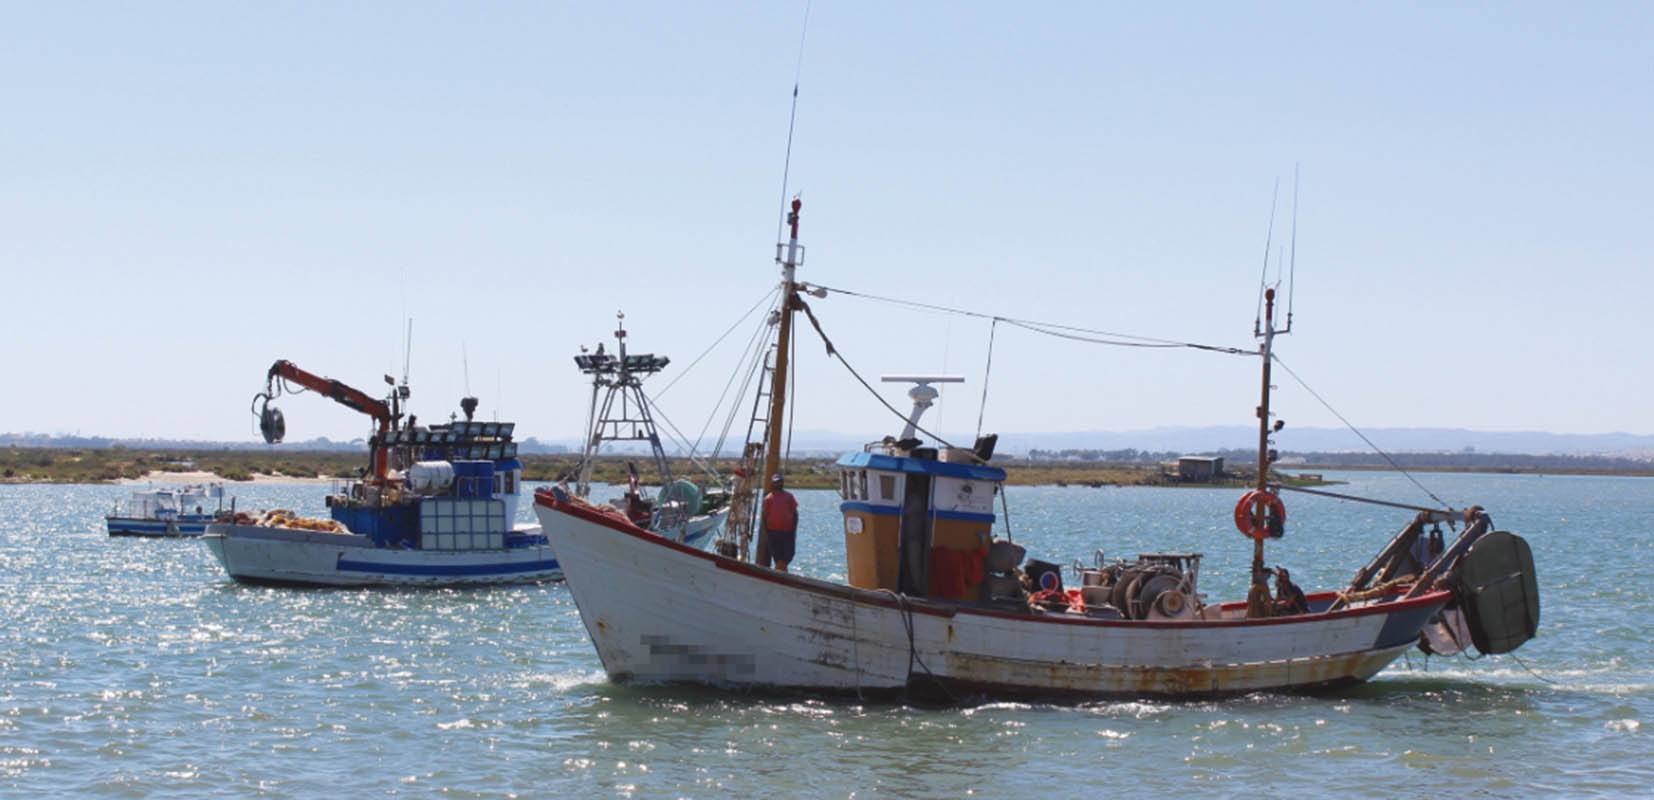 Barco pesquero descargando merluza en puerto